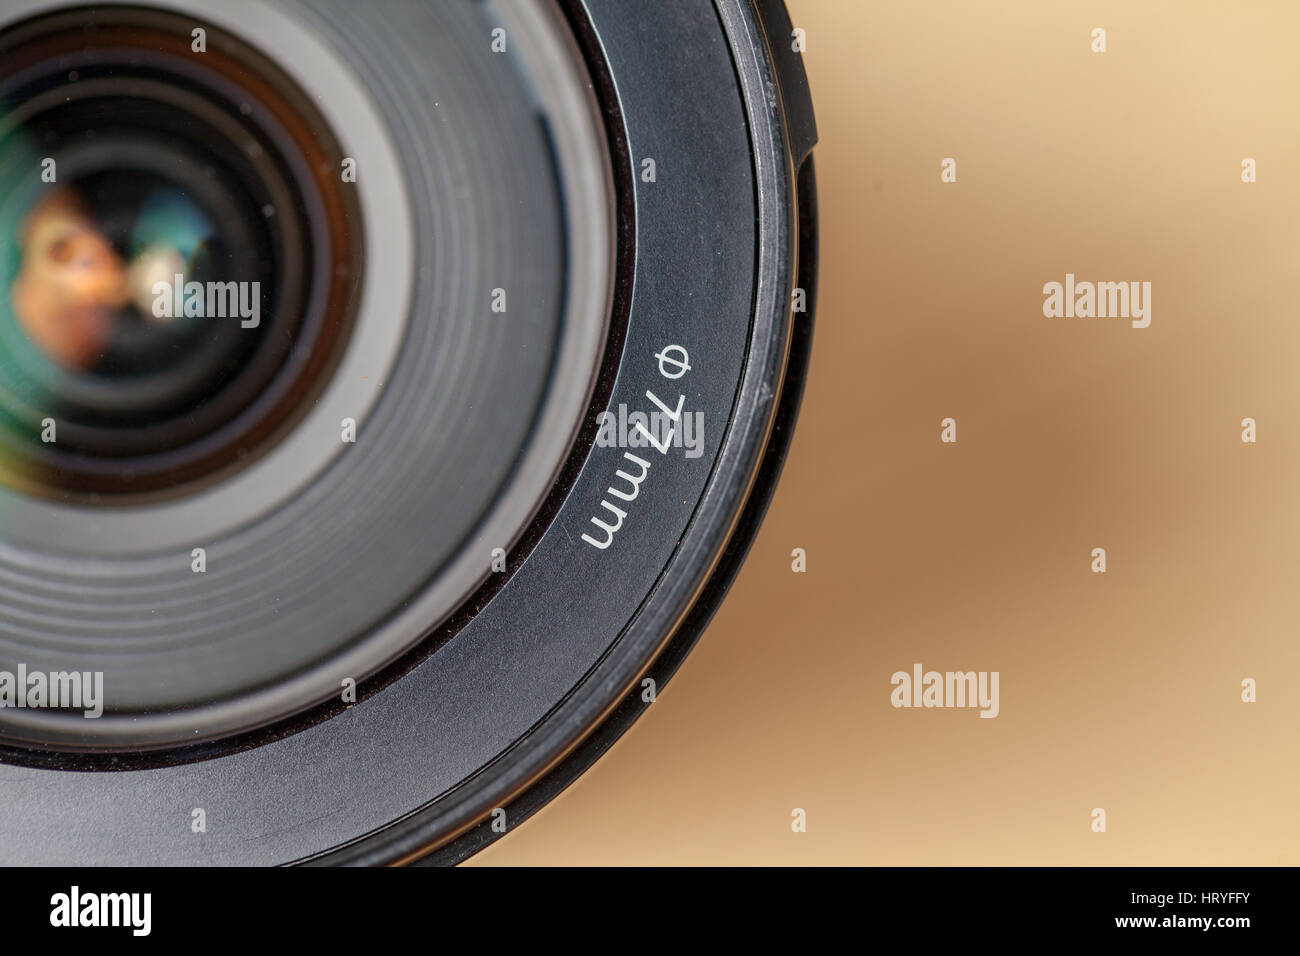 Fotocamera reflex digitale a obiettivo singolo obiettivo della fotocamera su sfondo sfocato Foto Stock